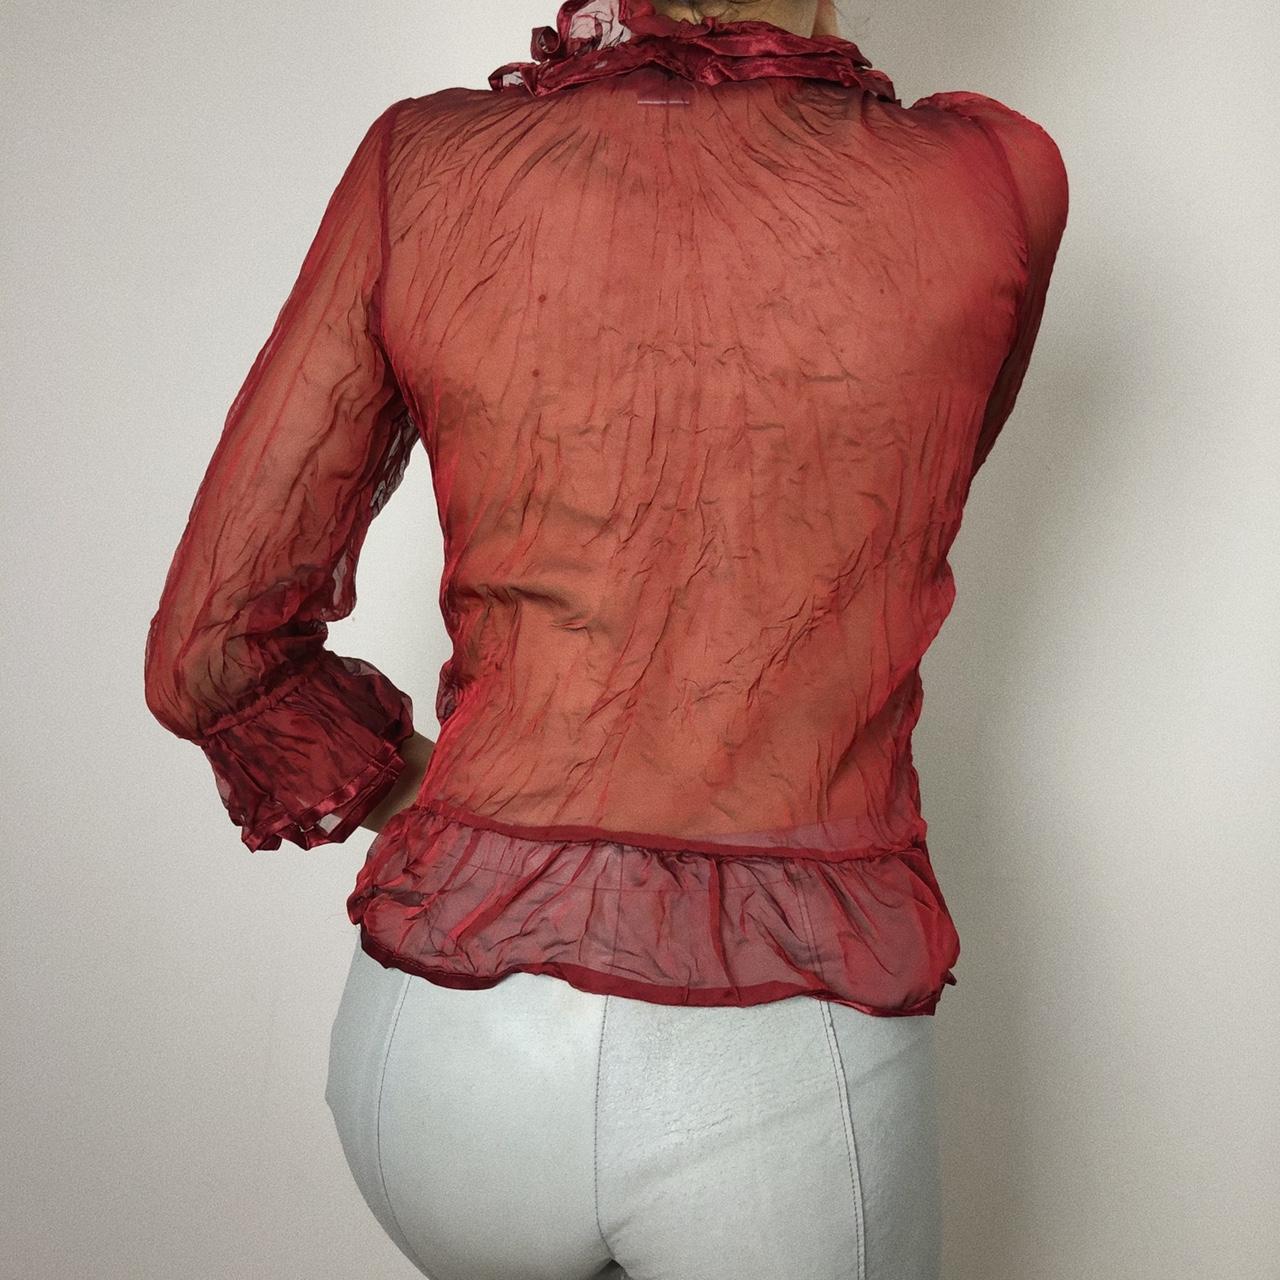 Beautiful vintage sheer burgundy blouse with ruffled... - Depop